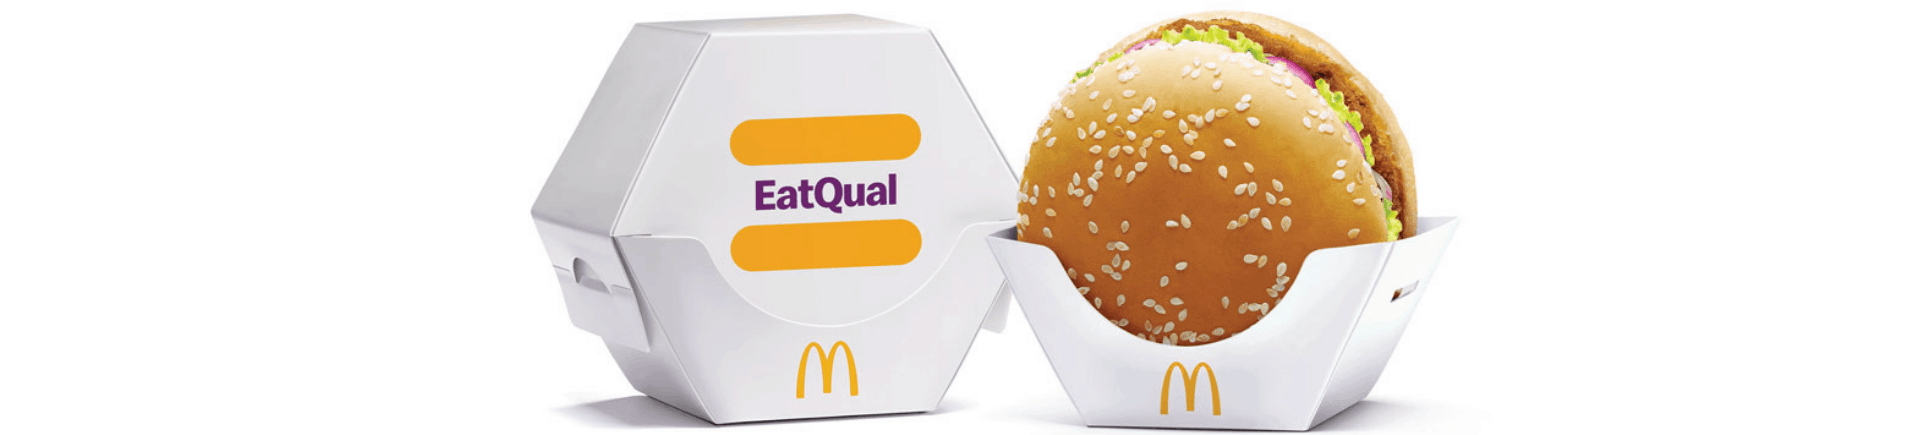 McDonald’s-EatQual